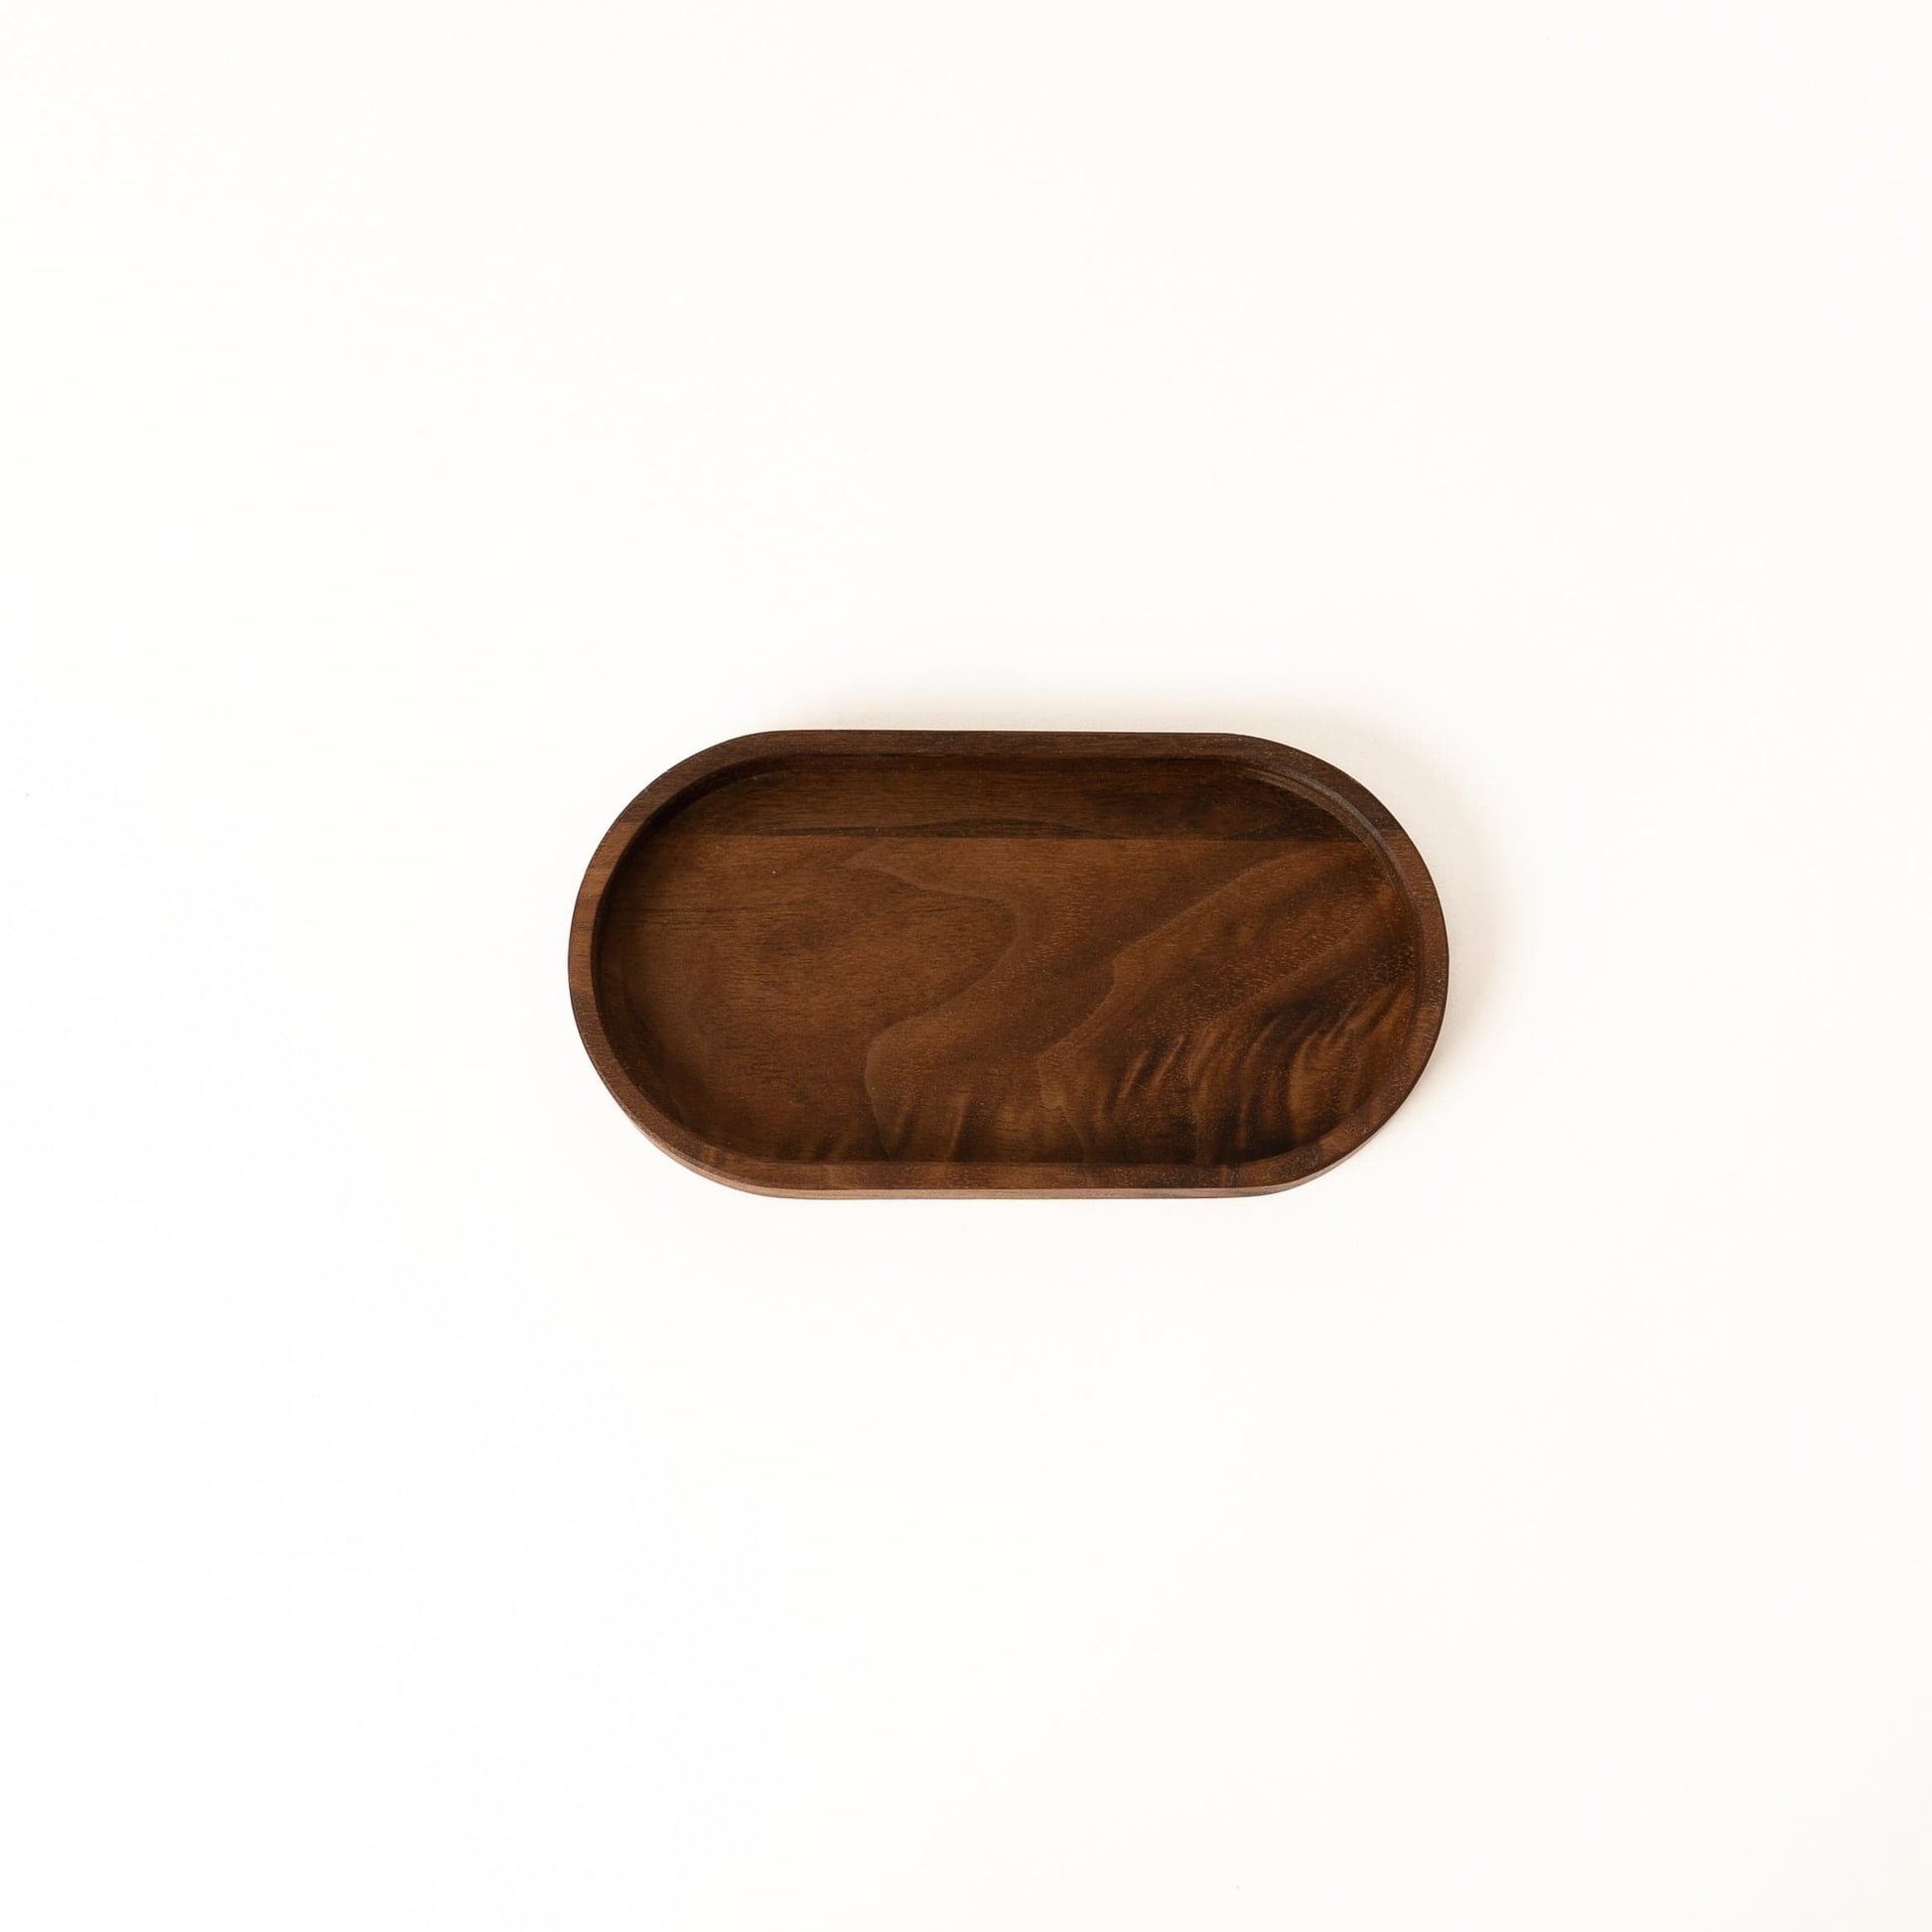 Holzmanufaktur Deko Tablett oval - Edle Geschenke aus Holz - Nussbaum Holz